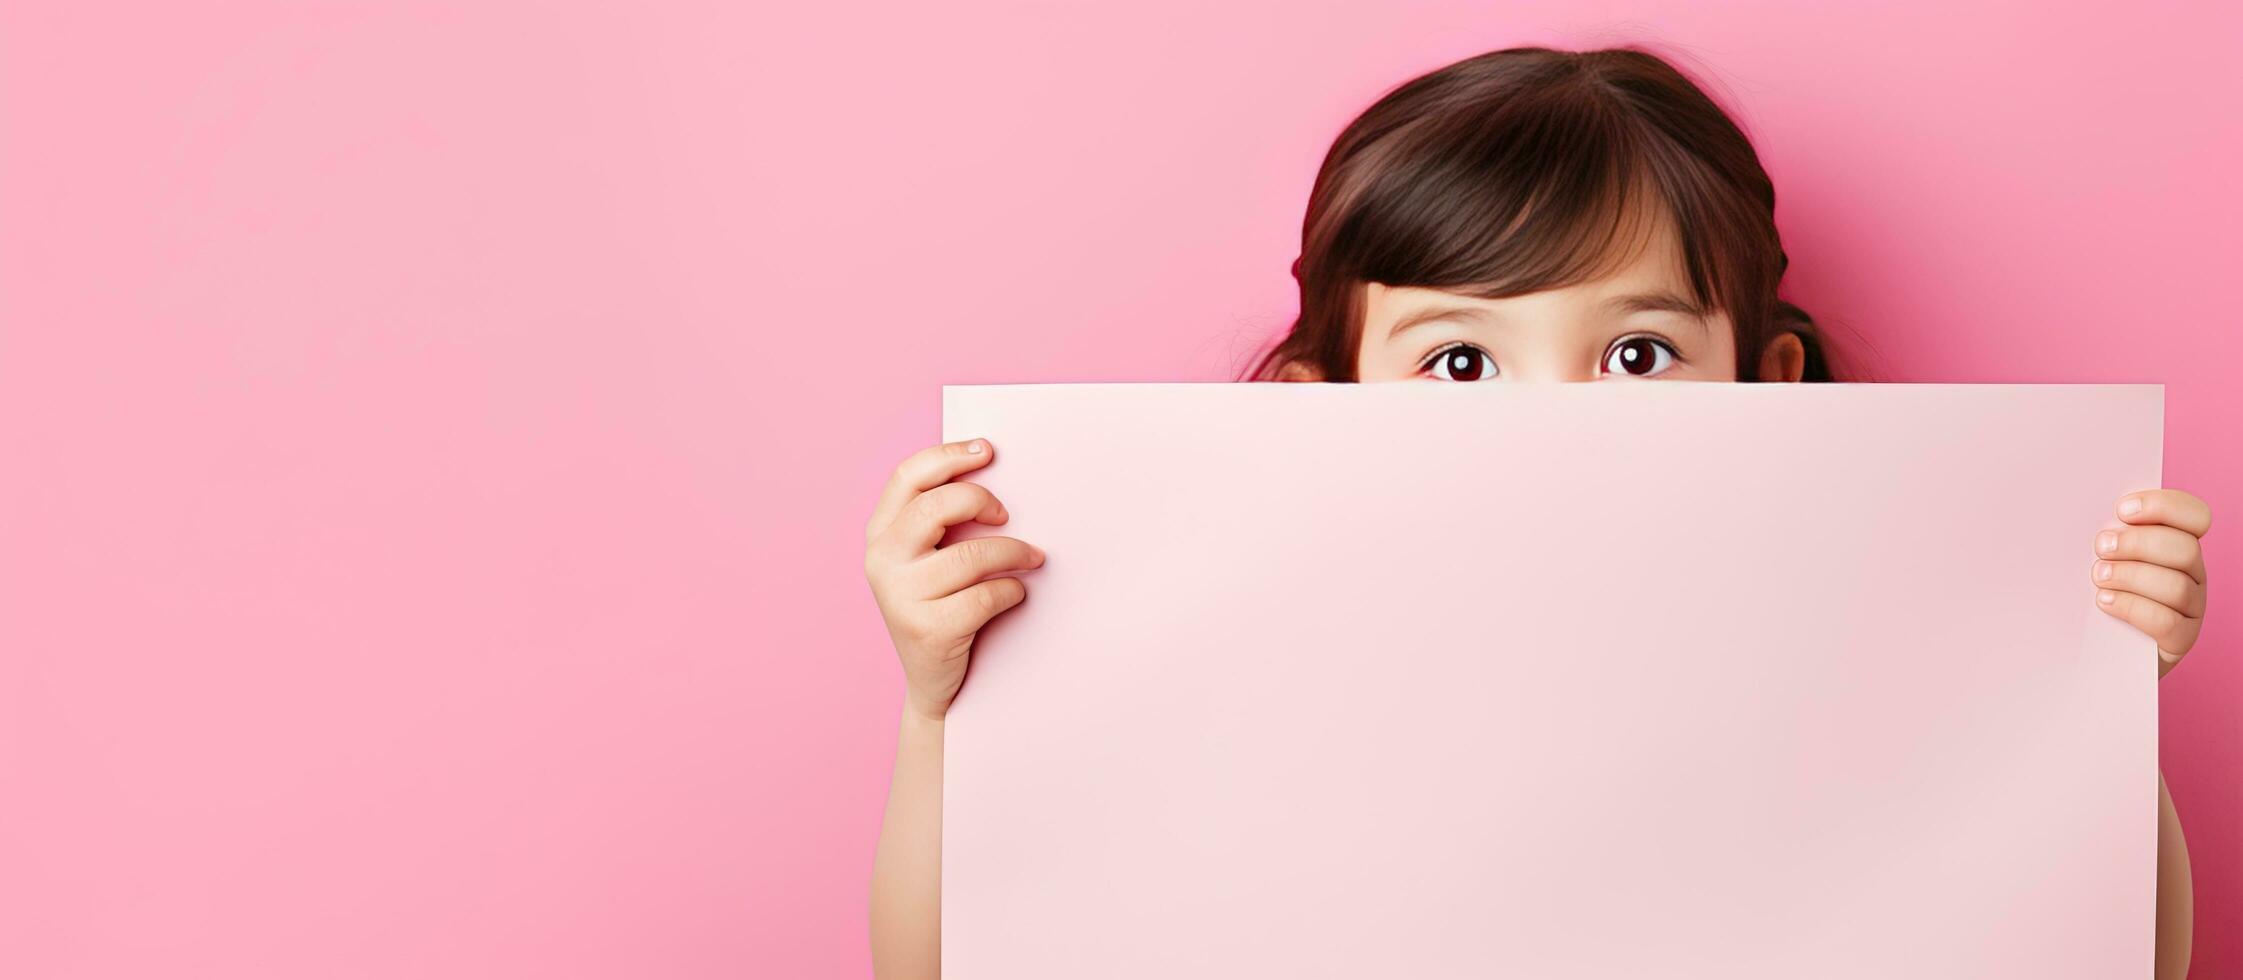 curieux enfant avec vide rose papier pour La publicité photo